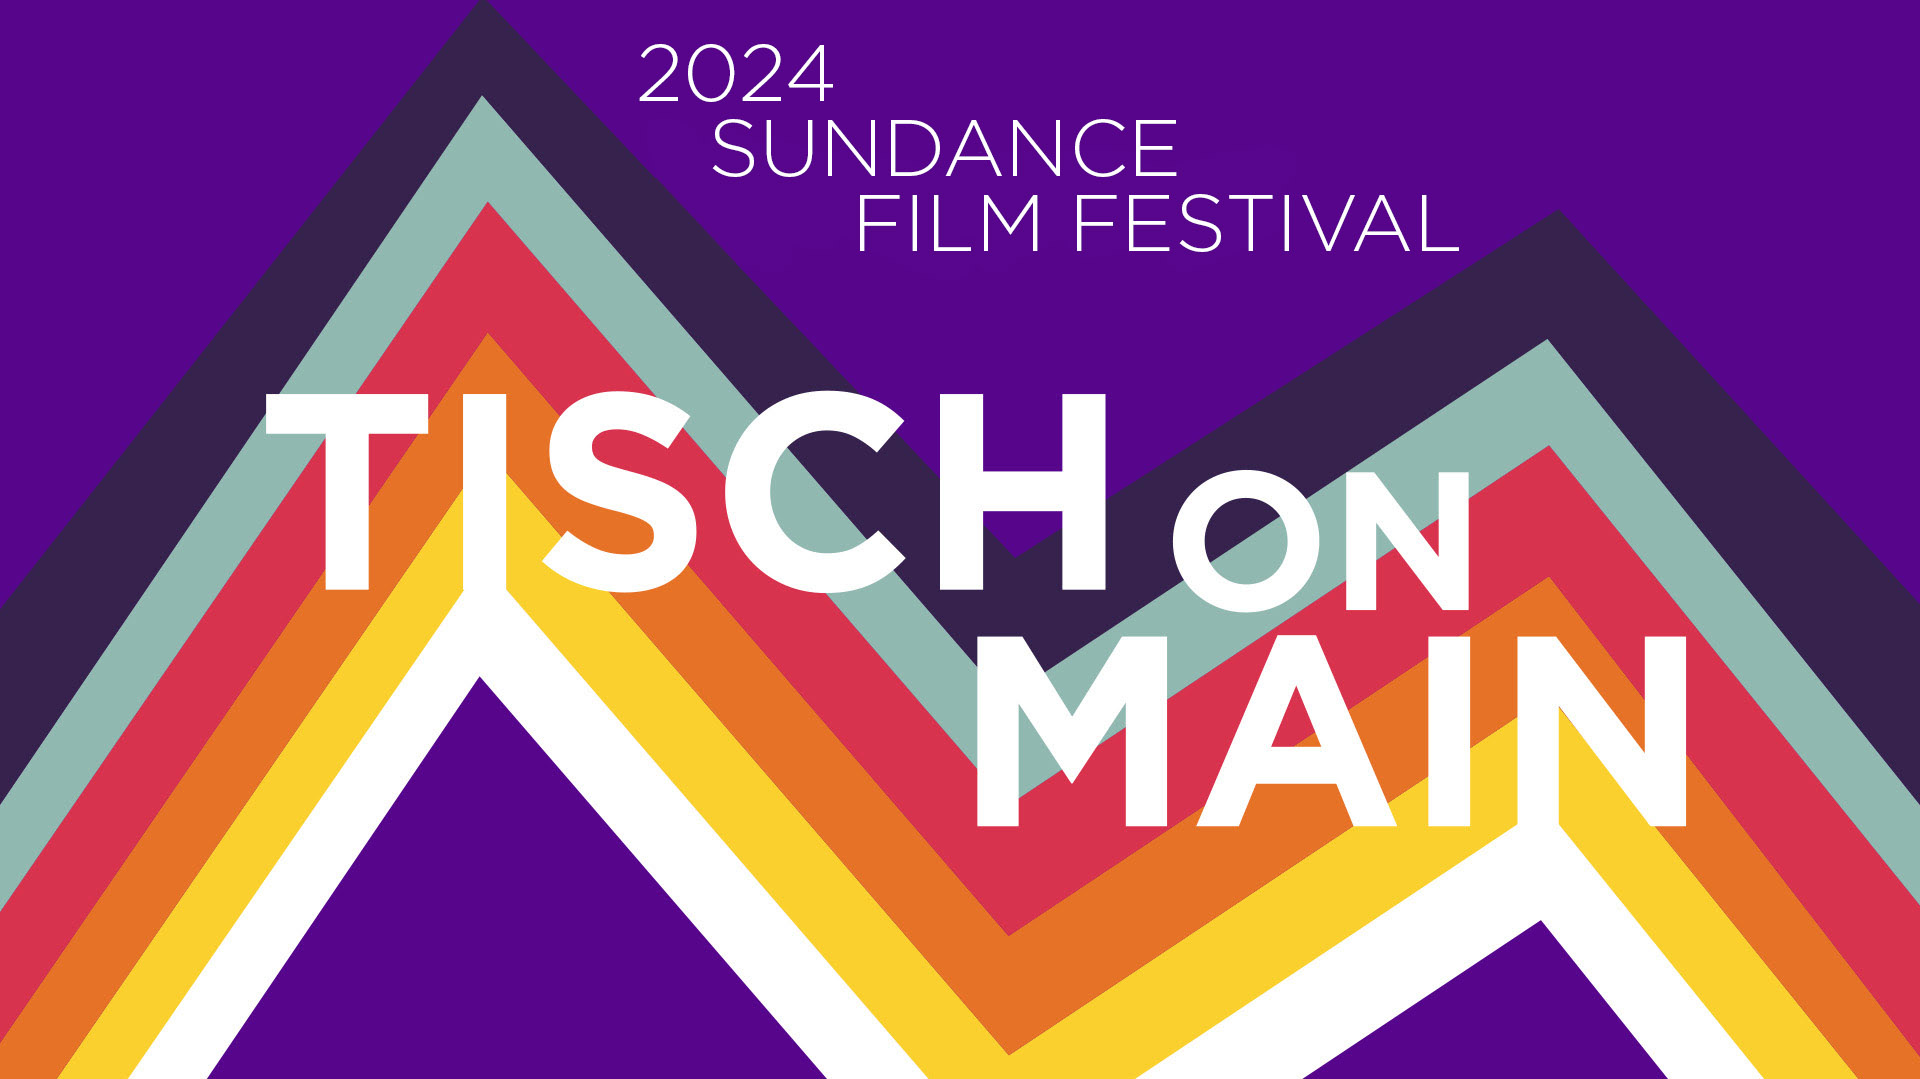 TISCH ON MAIN at the 2024 SUNDANCE FILM FESTIVAL